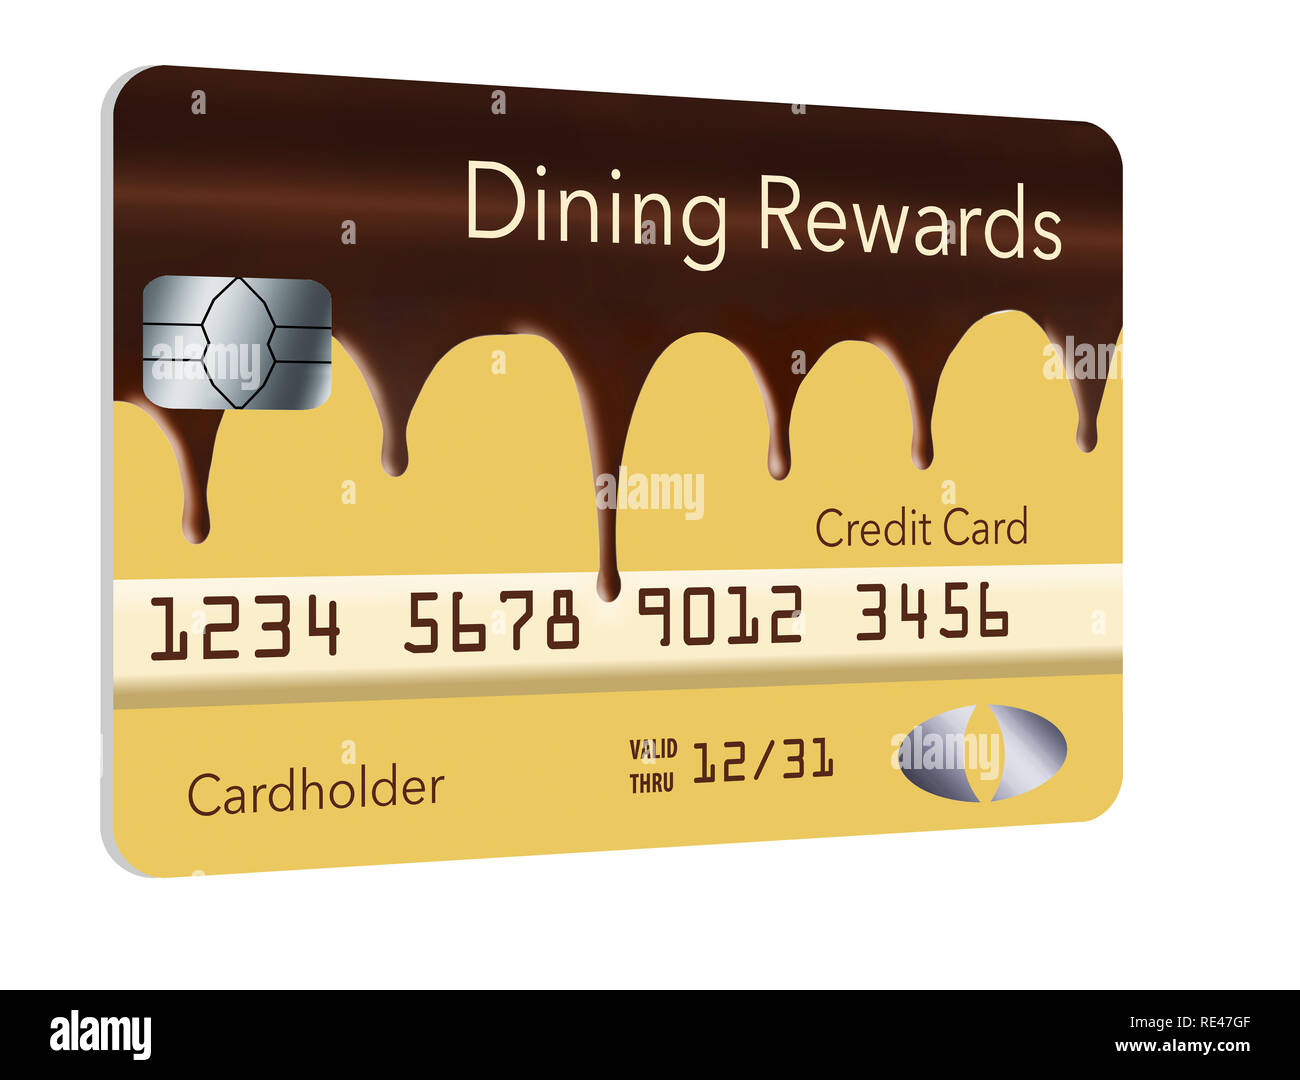 Eine Kreditkarte, die Cashback-Prämien für Restaurants anbietet, sieht aus wie ein Boston-Cremekuchen, der mit fließender Schokolade überzogen ist. Stockfoto